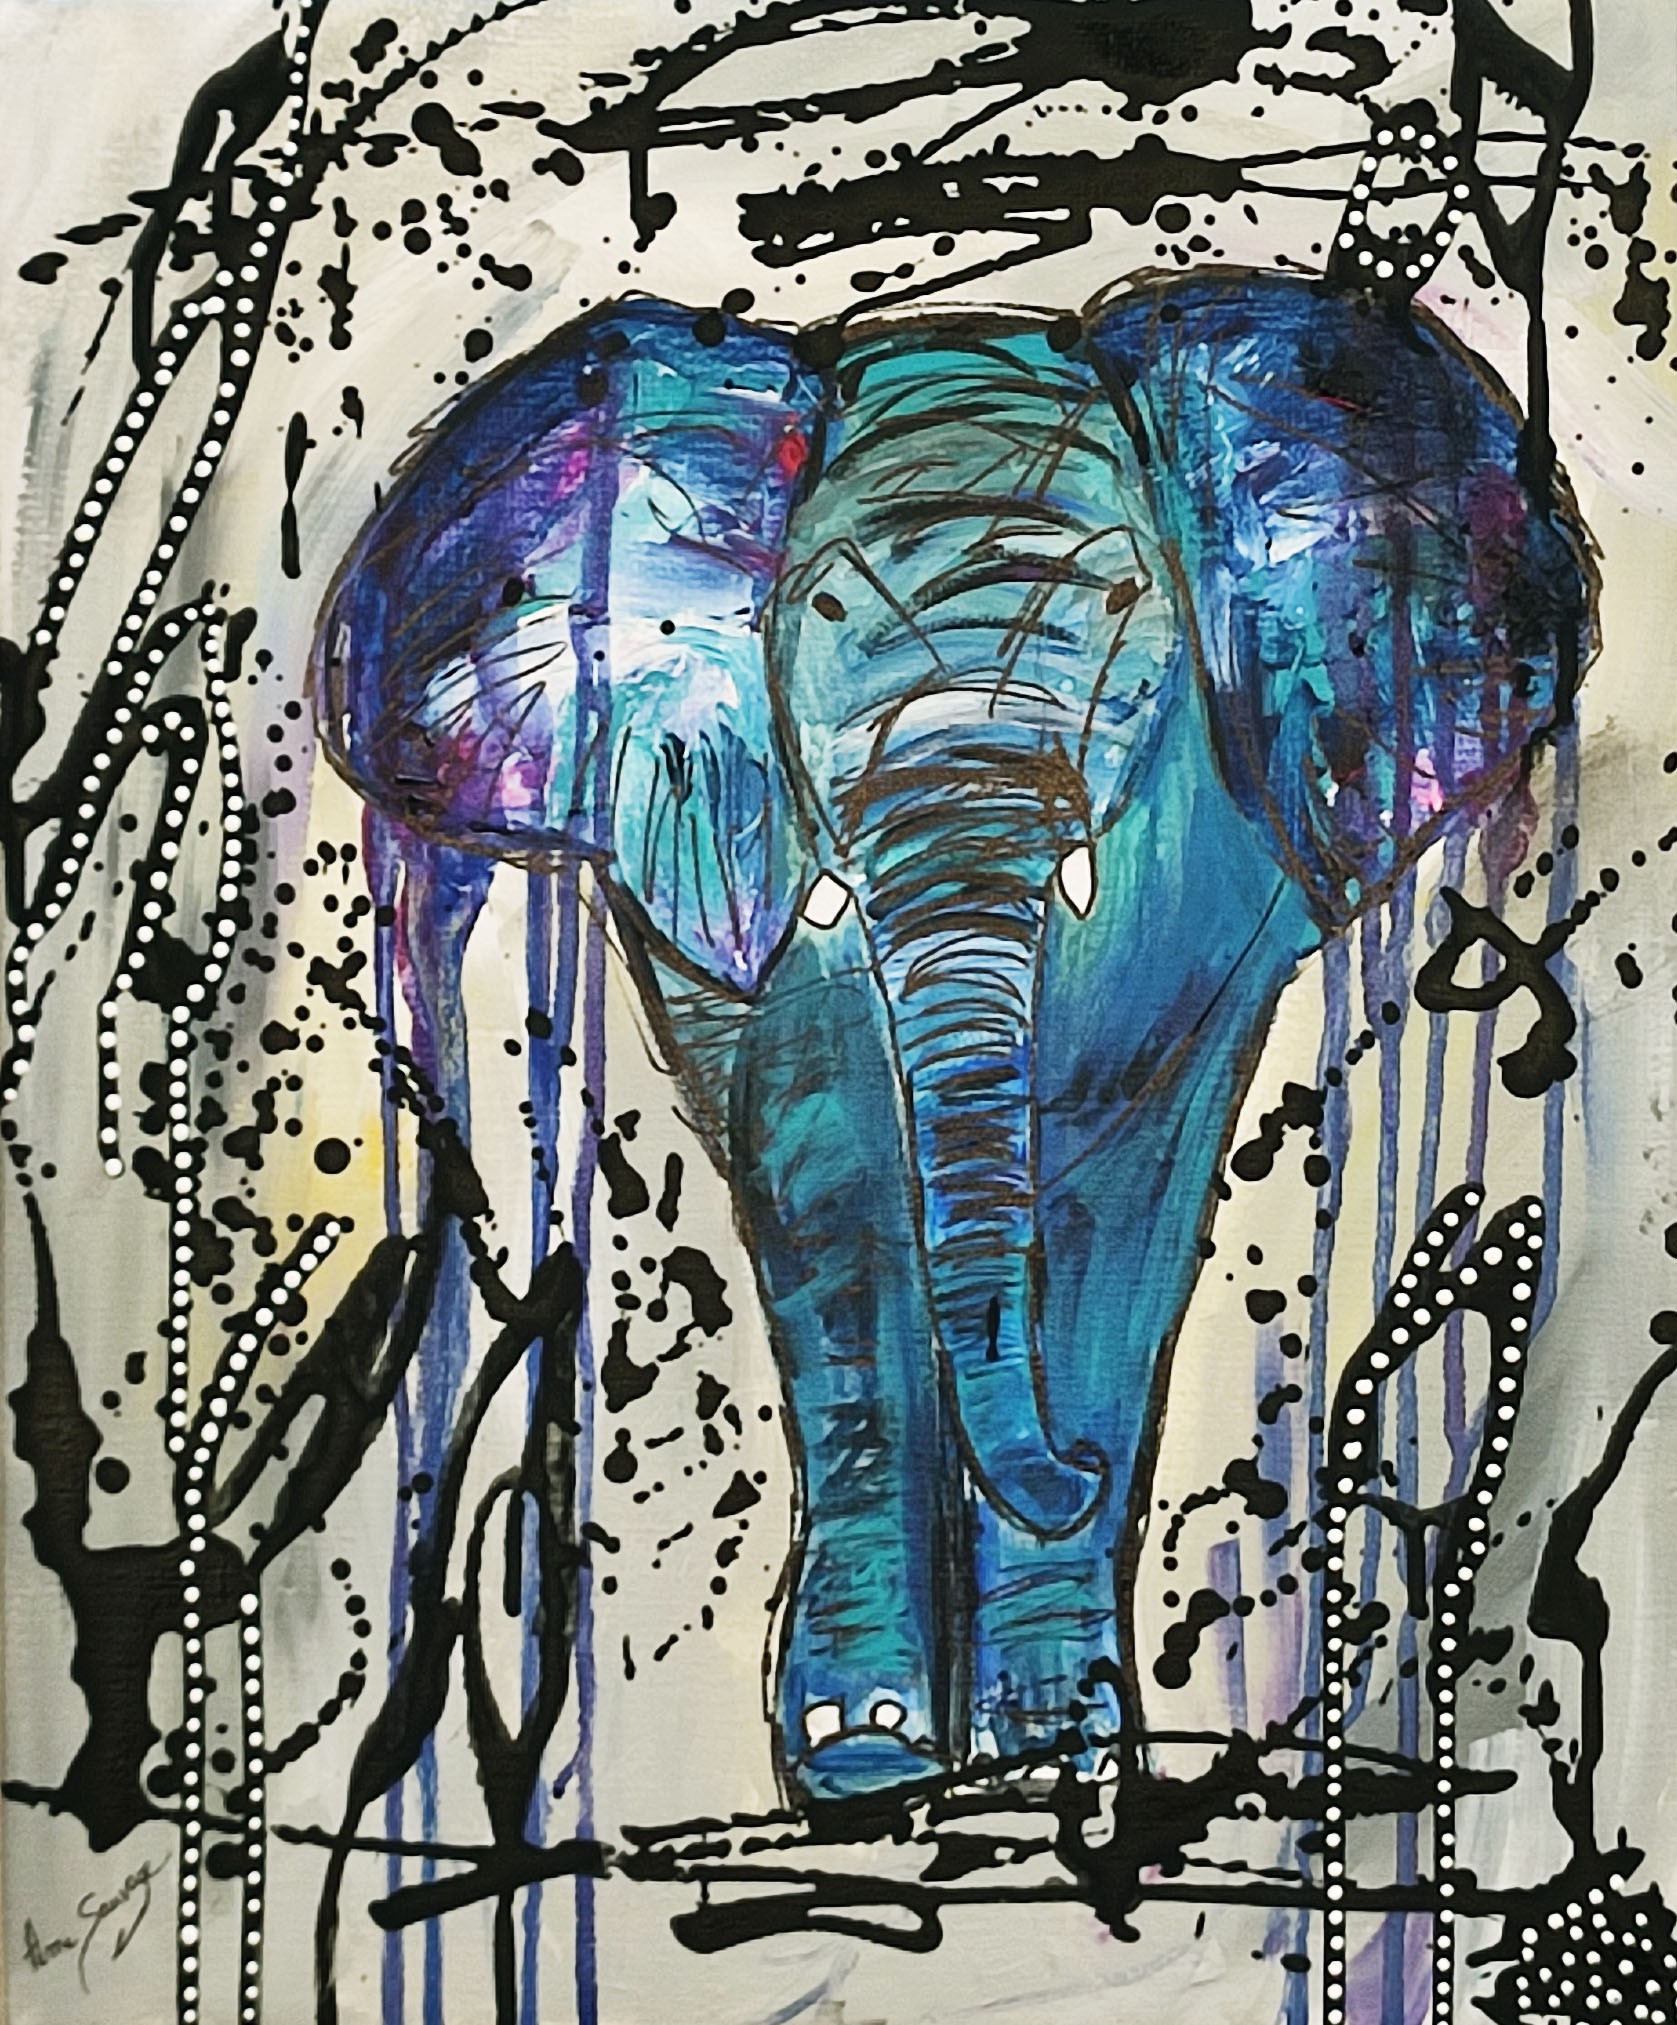 ▷ Tableau de l'éléphant en grand format